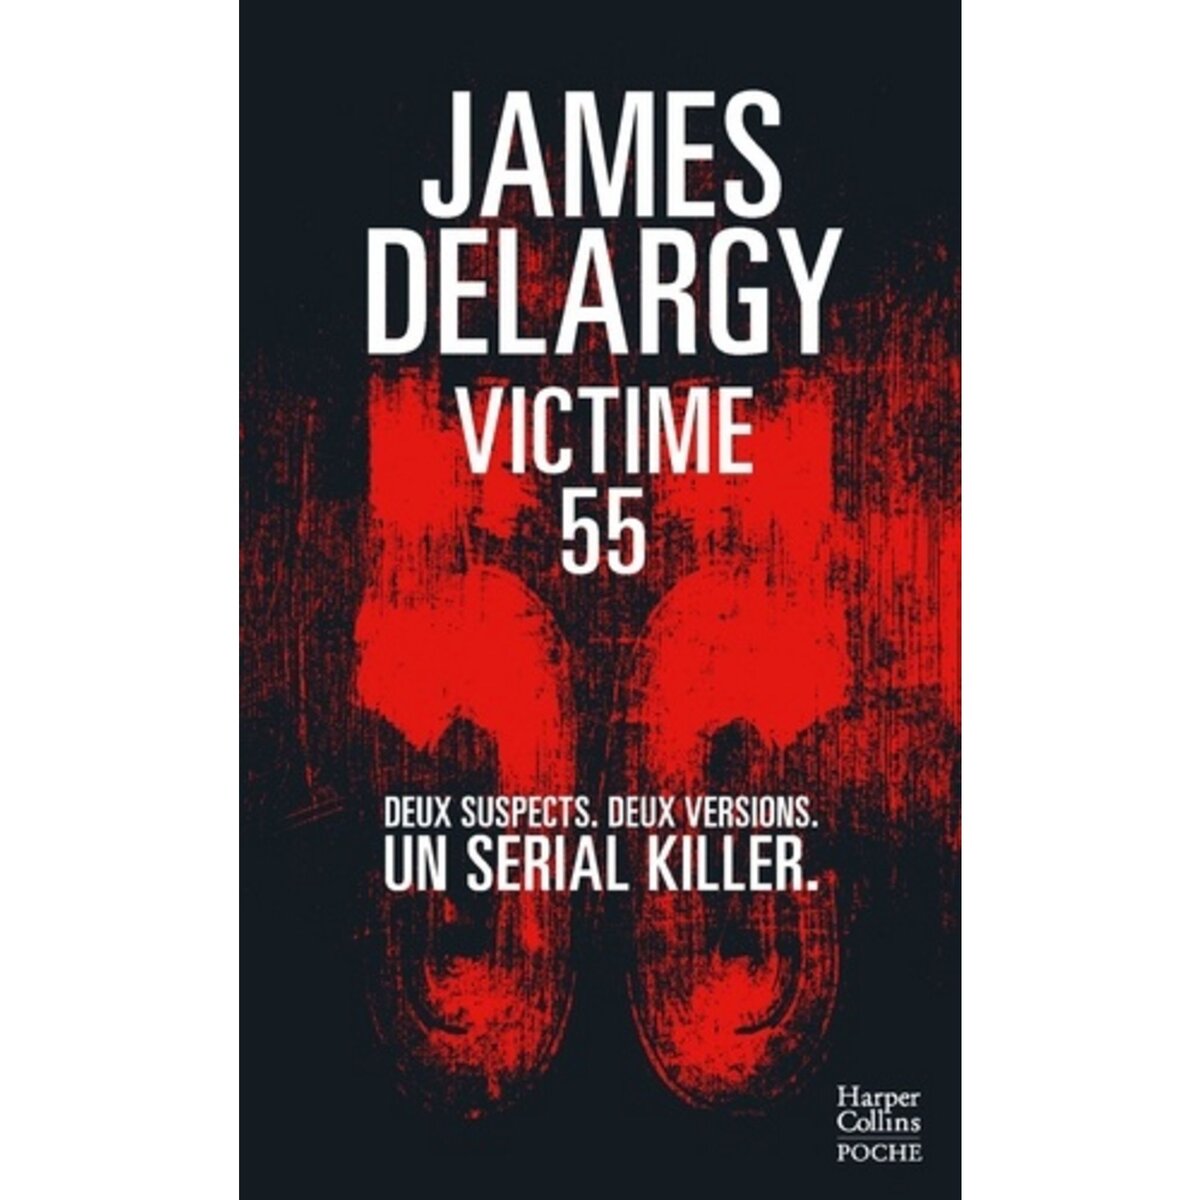  VICTIME 55, Delargy James